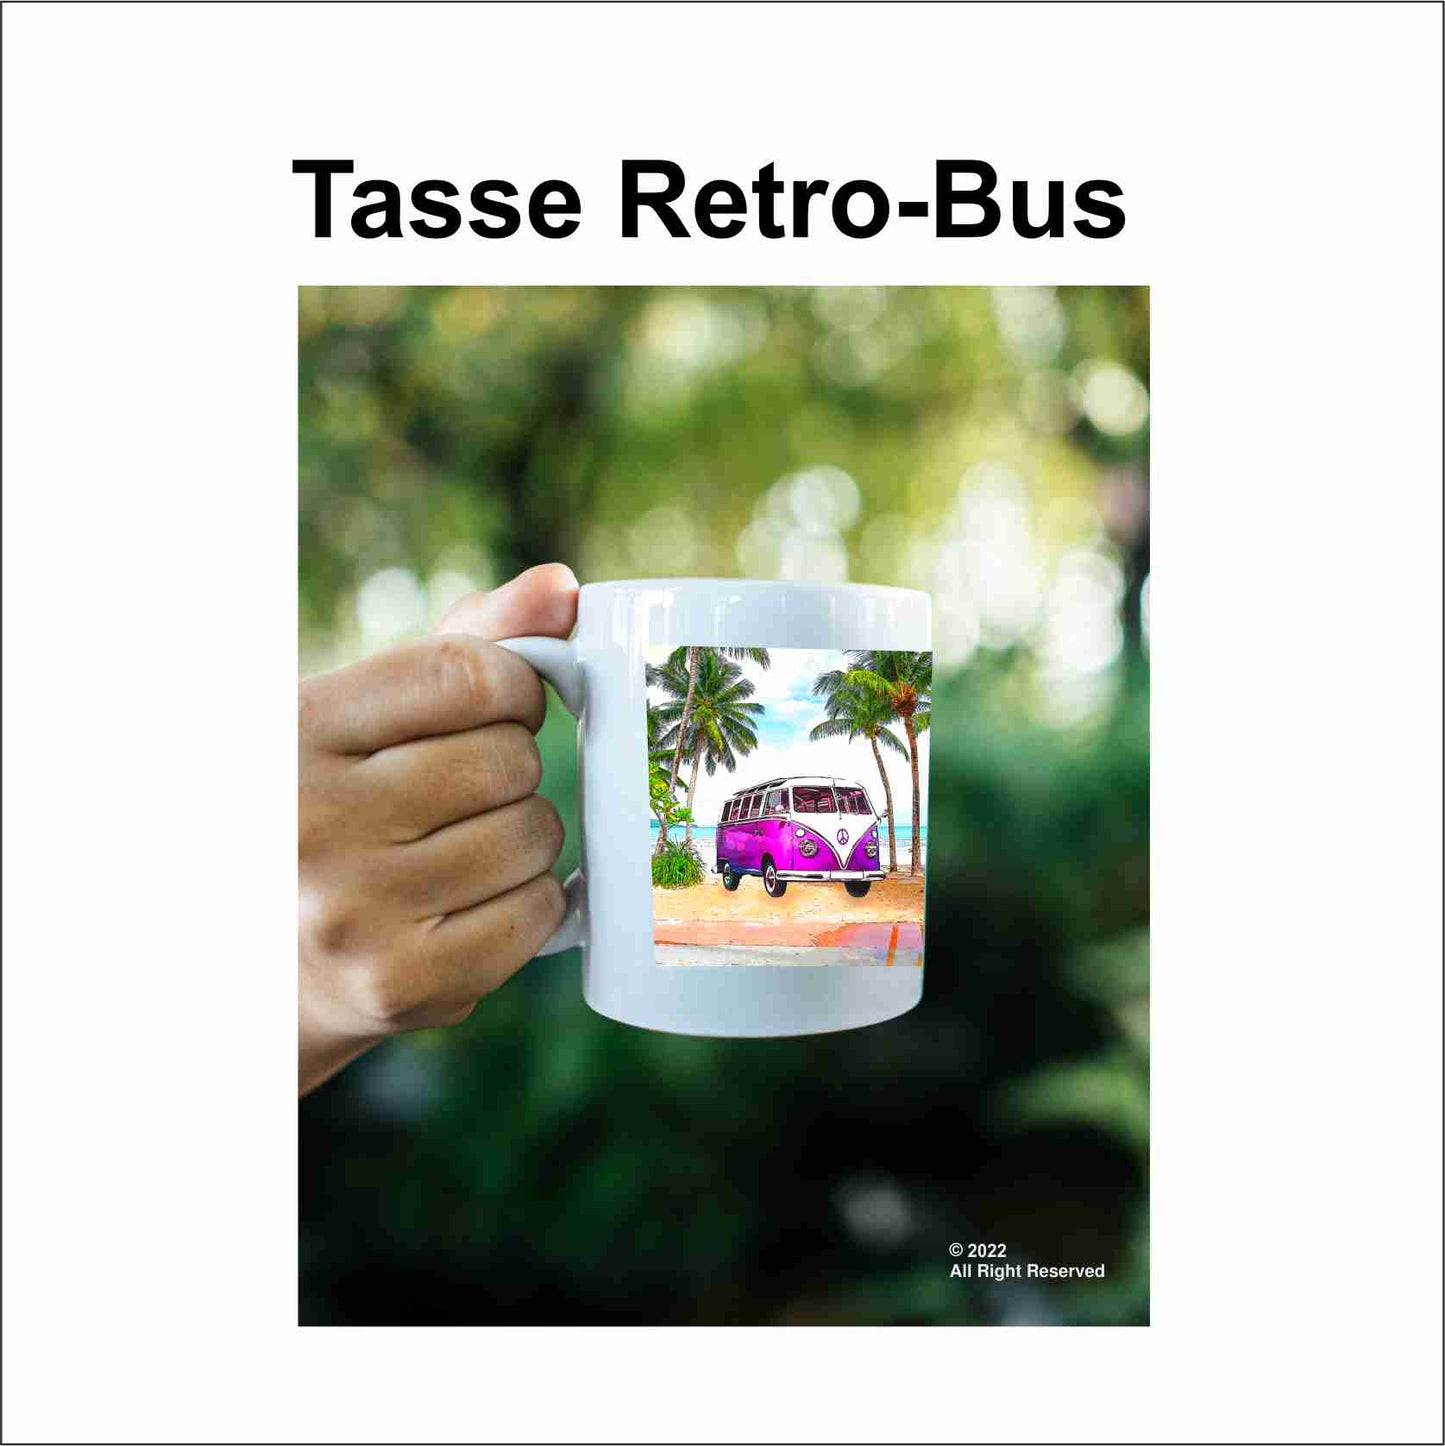 Bus Tasse Retro-Bus Camping